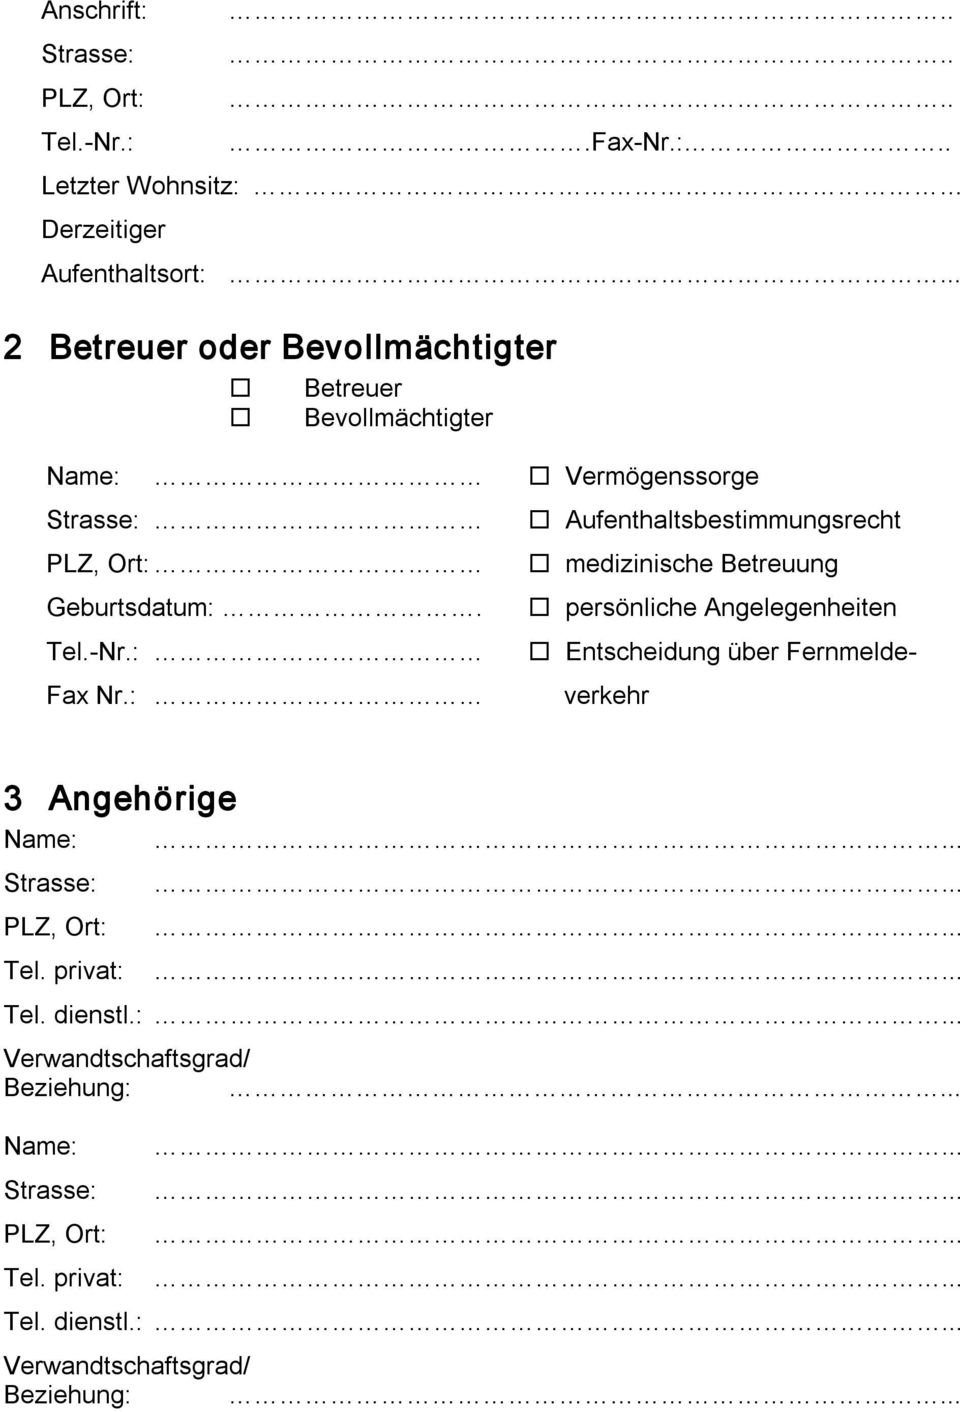 medizinische Betreuung Geburtsdatum:. persönliche Angelegenheiten Tel. Nr.: Entscheidung über Fernmelde Fax Nr.